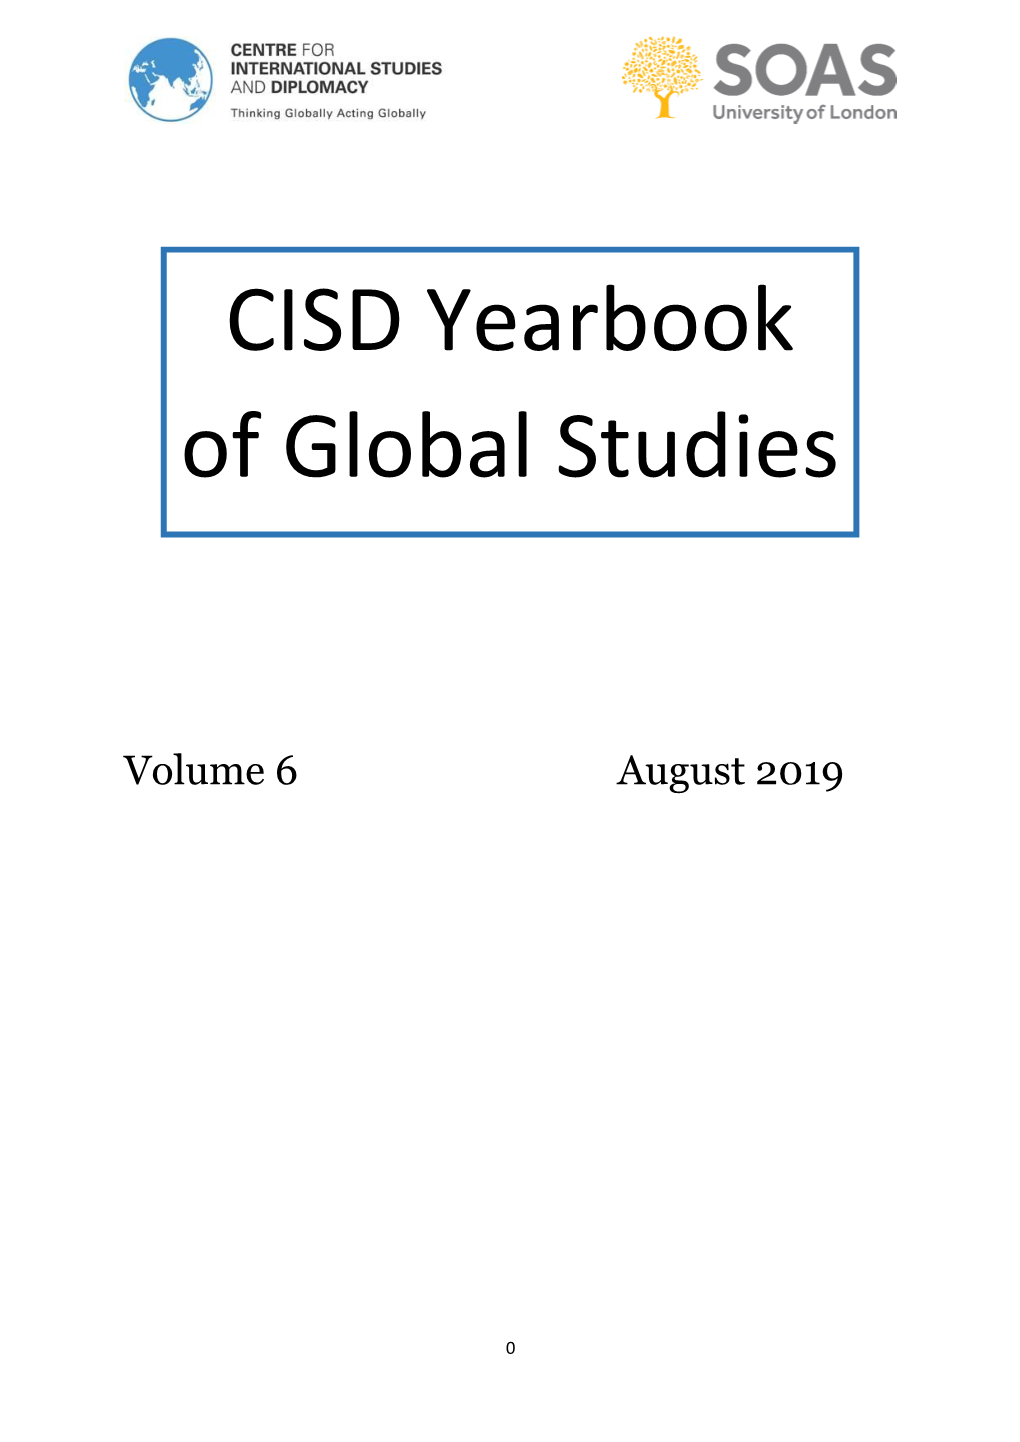 CISD Yearbook of Global Studies